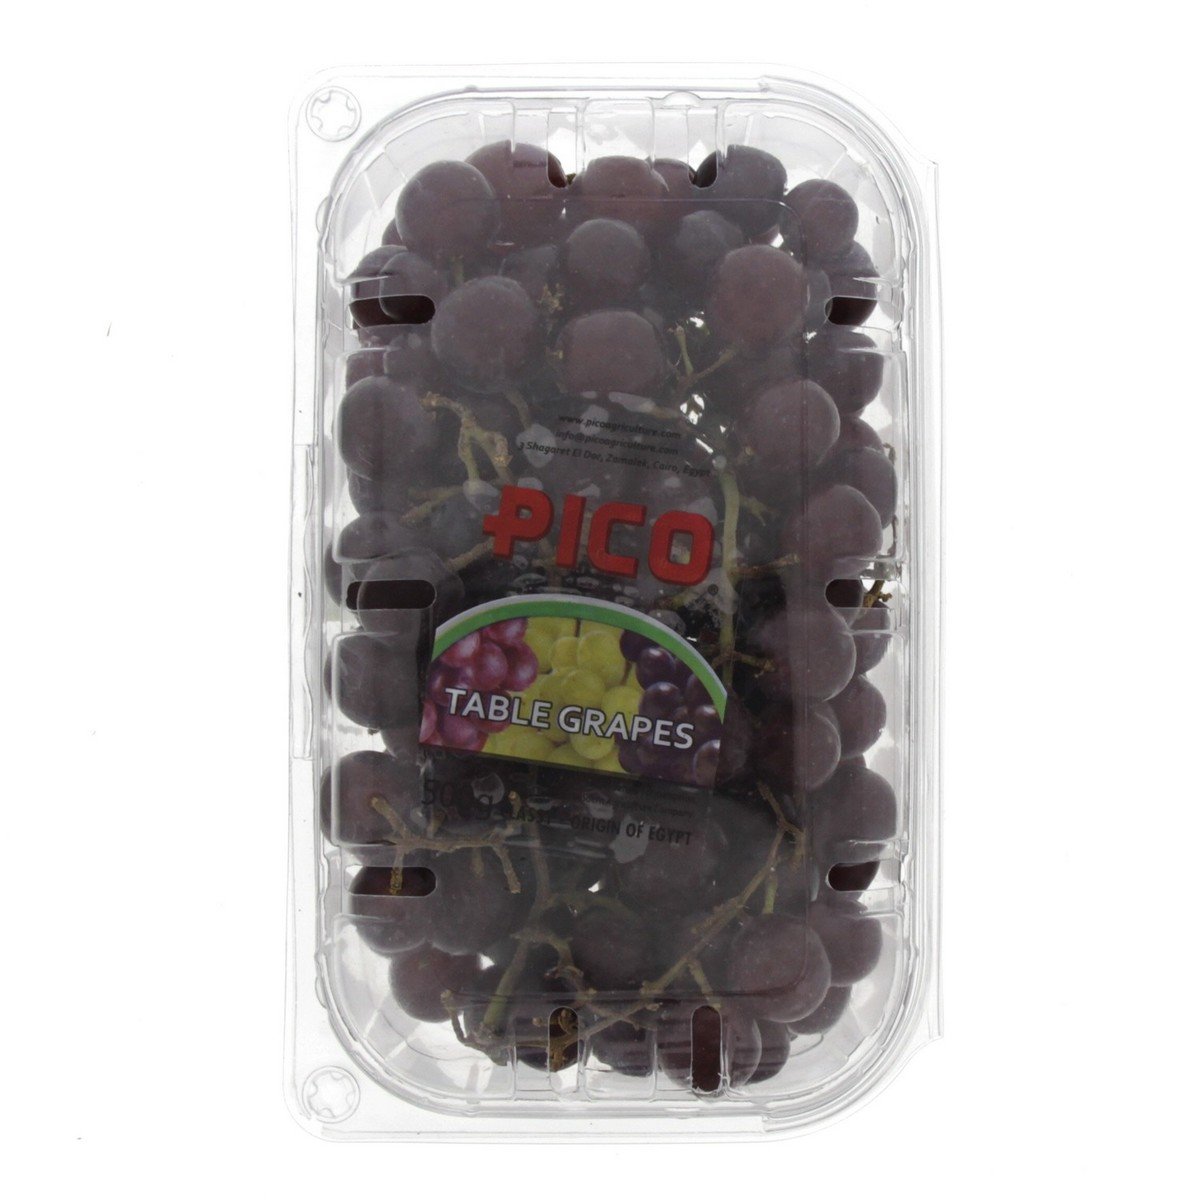 اشتري قم بشراء عنب أحمر عبوة 500 جم Online at Best Price من الموقع - من لولو هايبر ماركت Grapes في الامارات